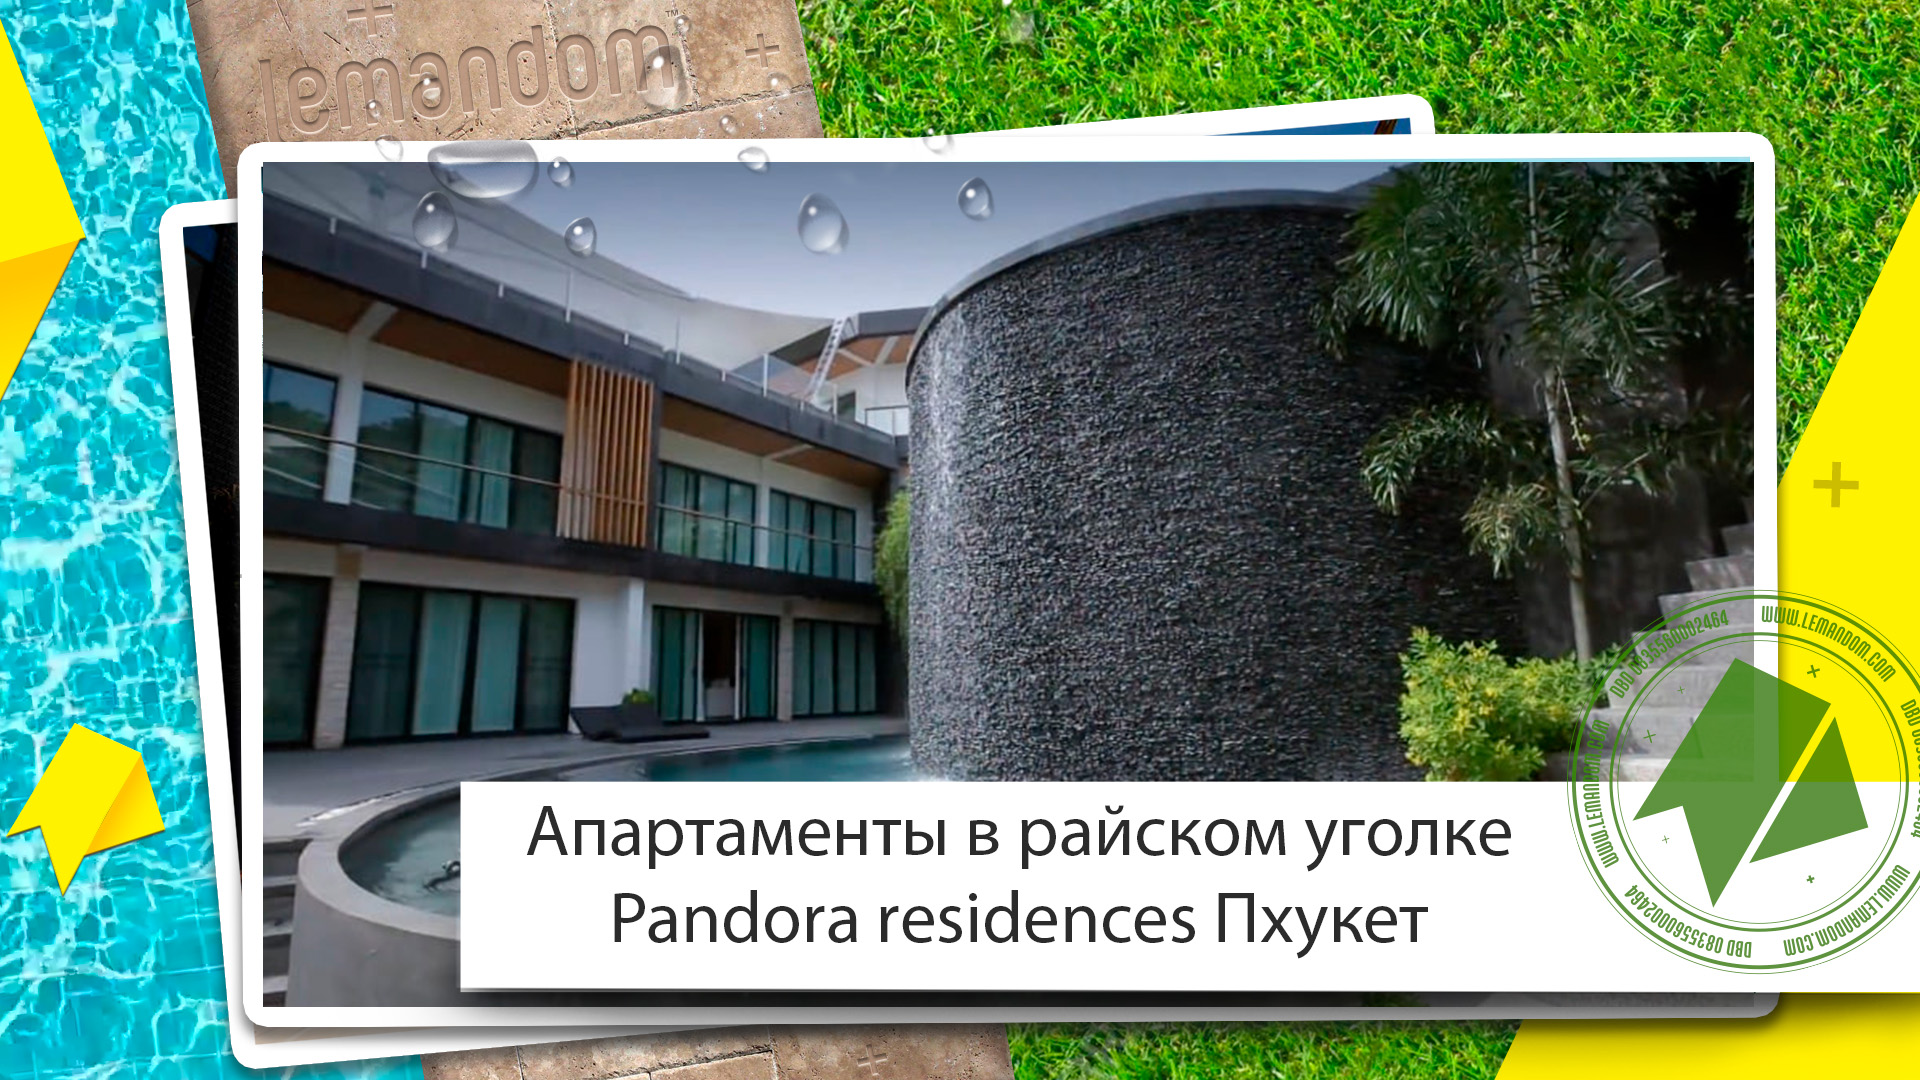 Купить апартаменты на Пхукете. Pandora residences на Равай. Агентство недвижимости LEMANDOM.